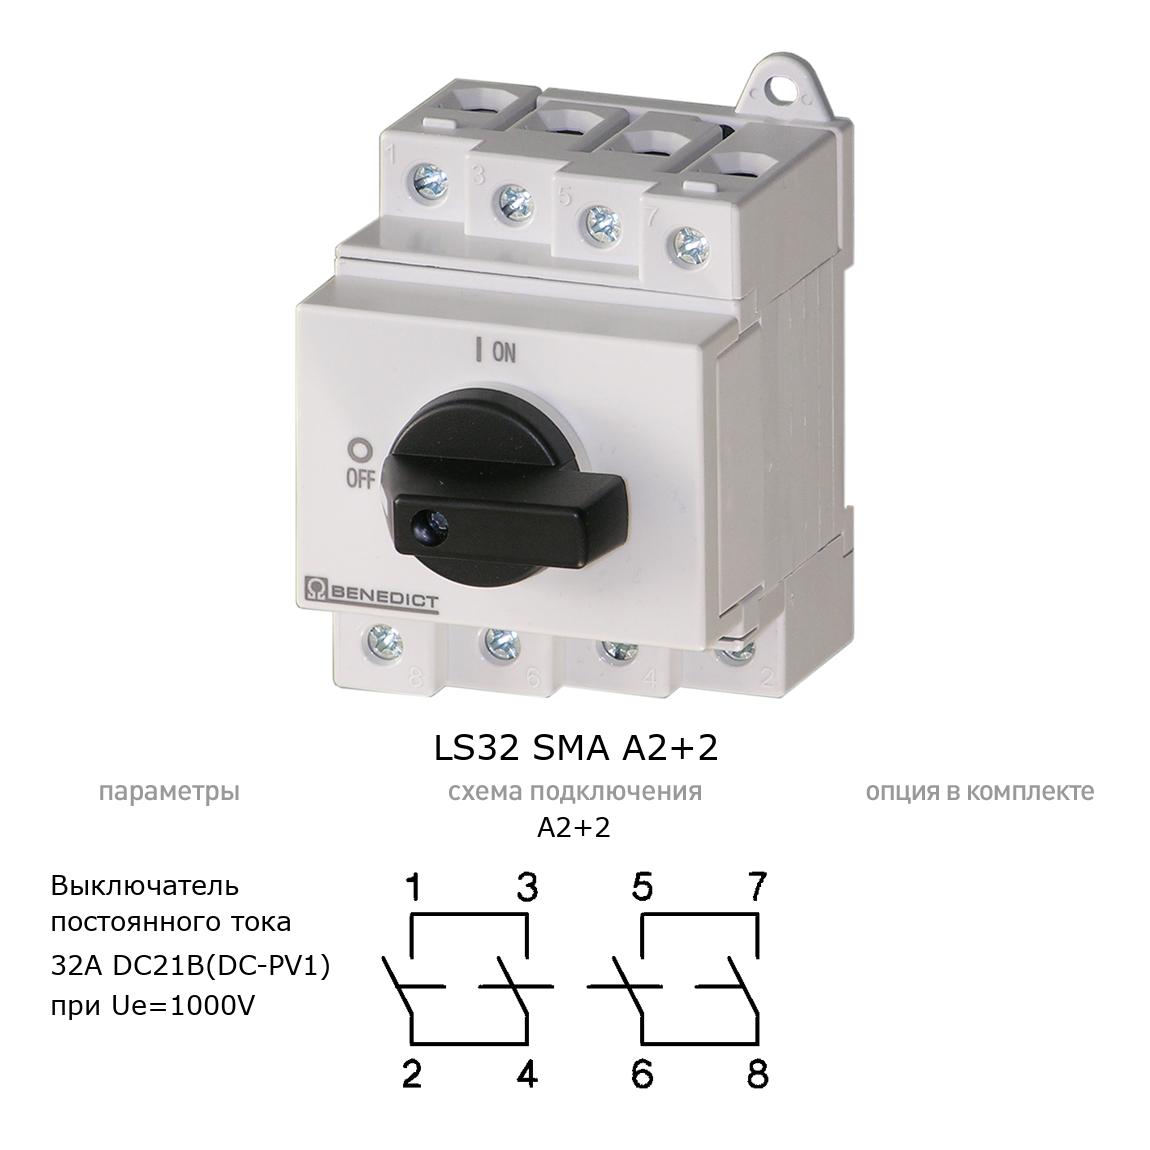 Кулачковый переключатель для постоянного тока (DC) LS32 SMA A2+2 BENEDICT